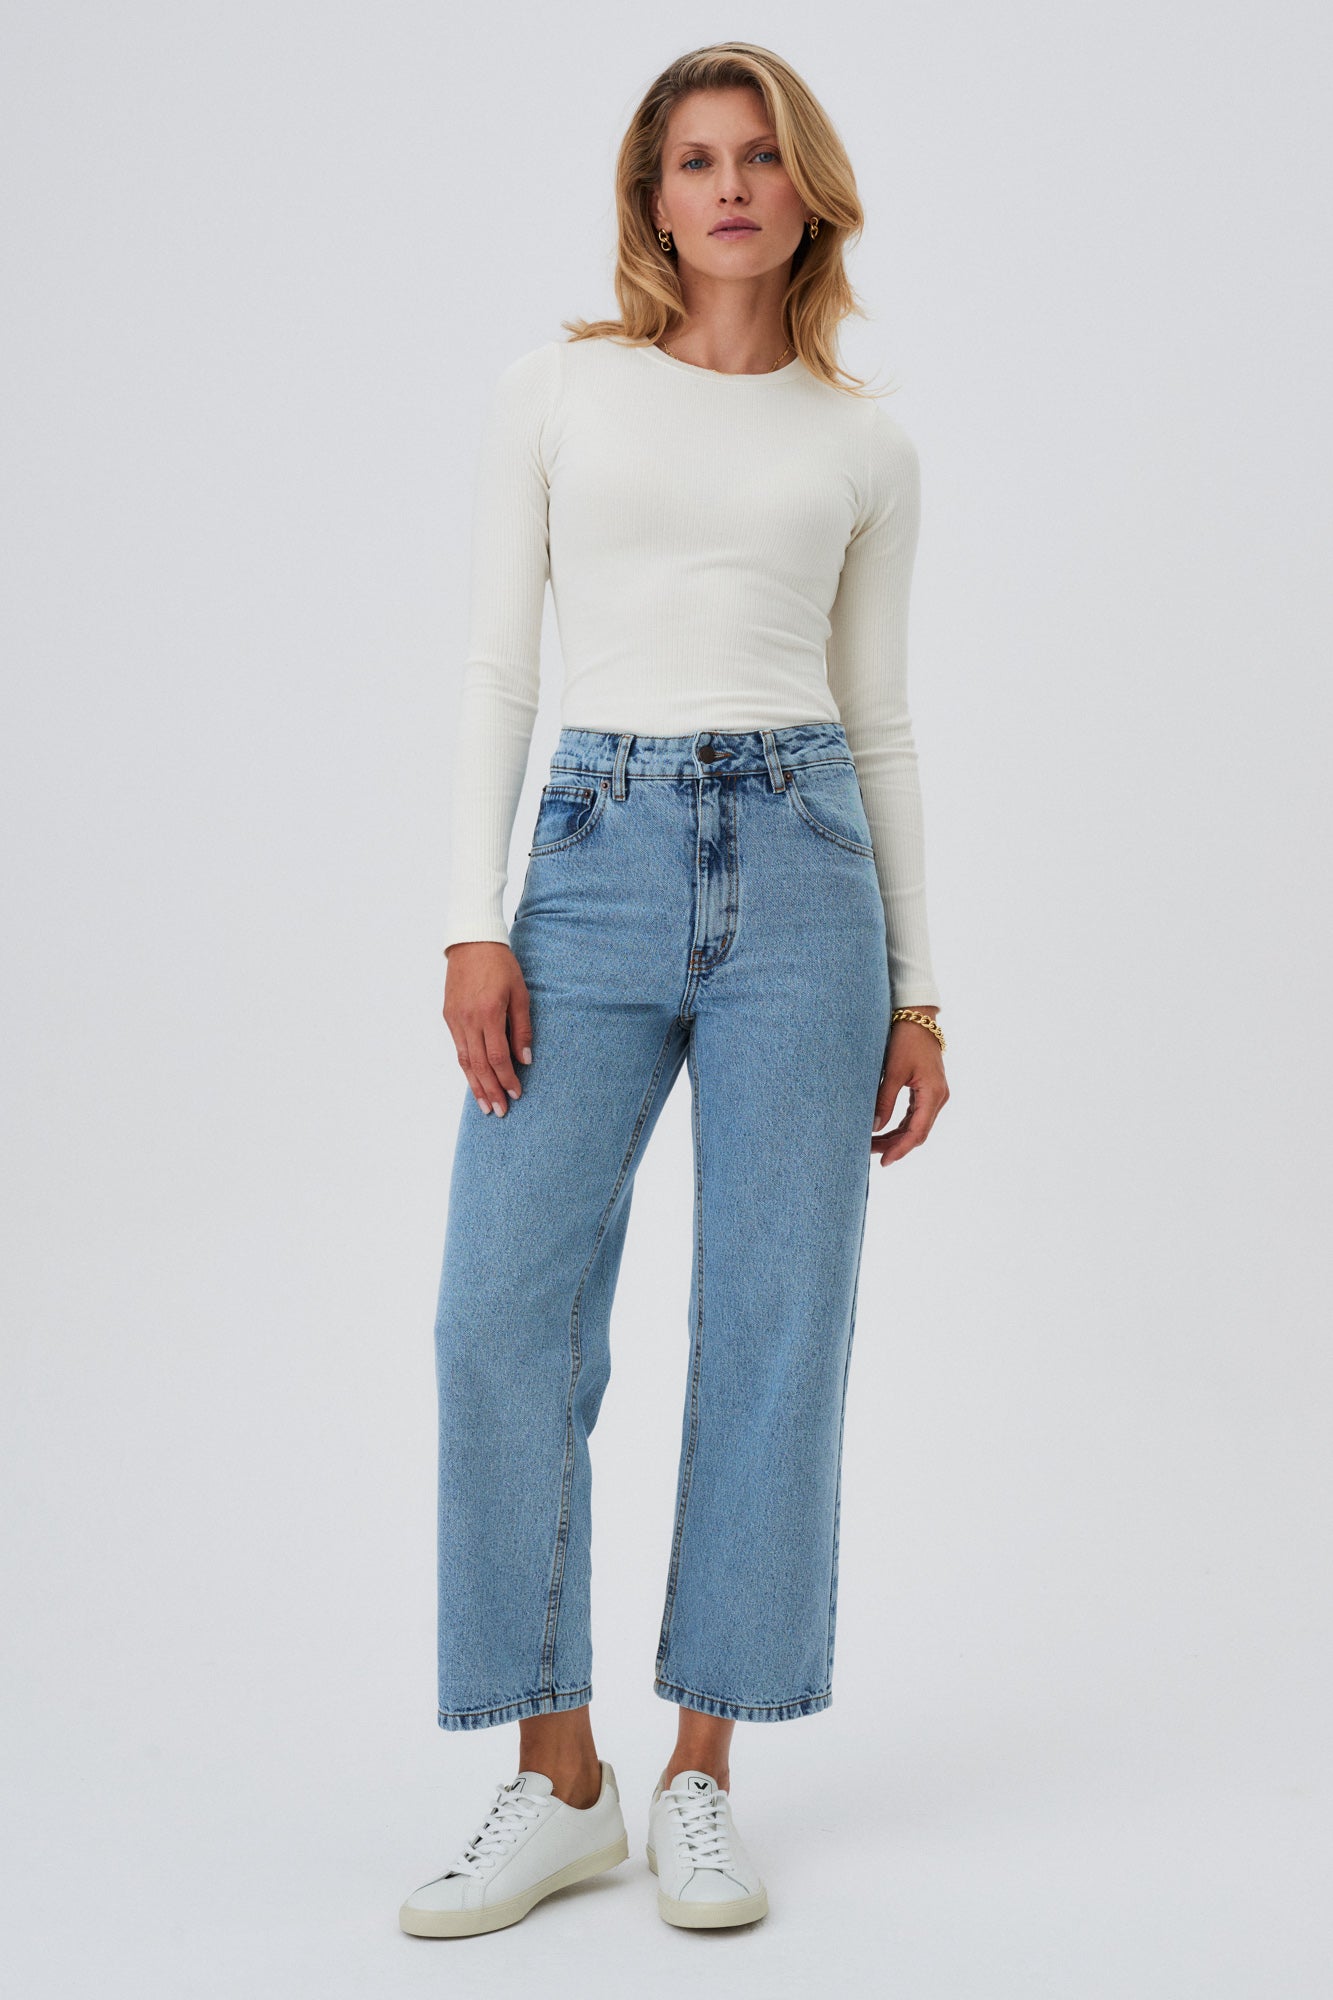 Longsleeve z bawełny organicznej / 14 / 01 / cream white *jeansy-z-bawelny-05-12-semi-indigo* ?Modelka ma 177cm wzrostu i nosi rozmiar S? |